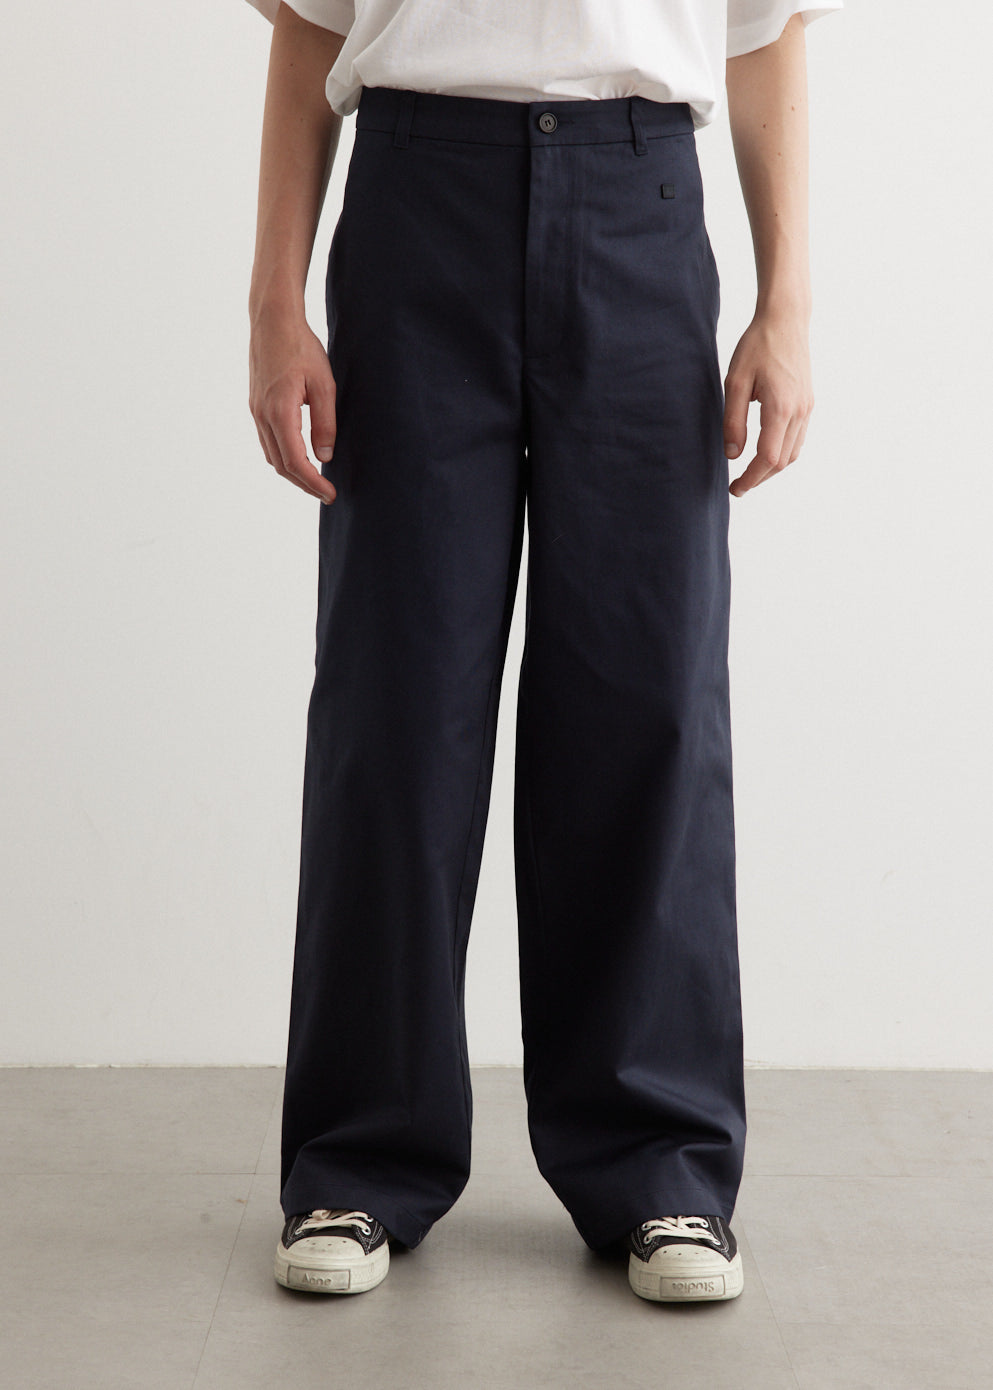 Men's Workwear Twill Pants by Simone Rocha